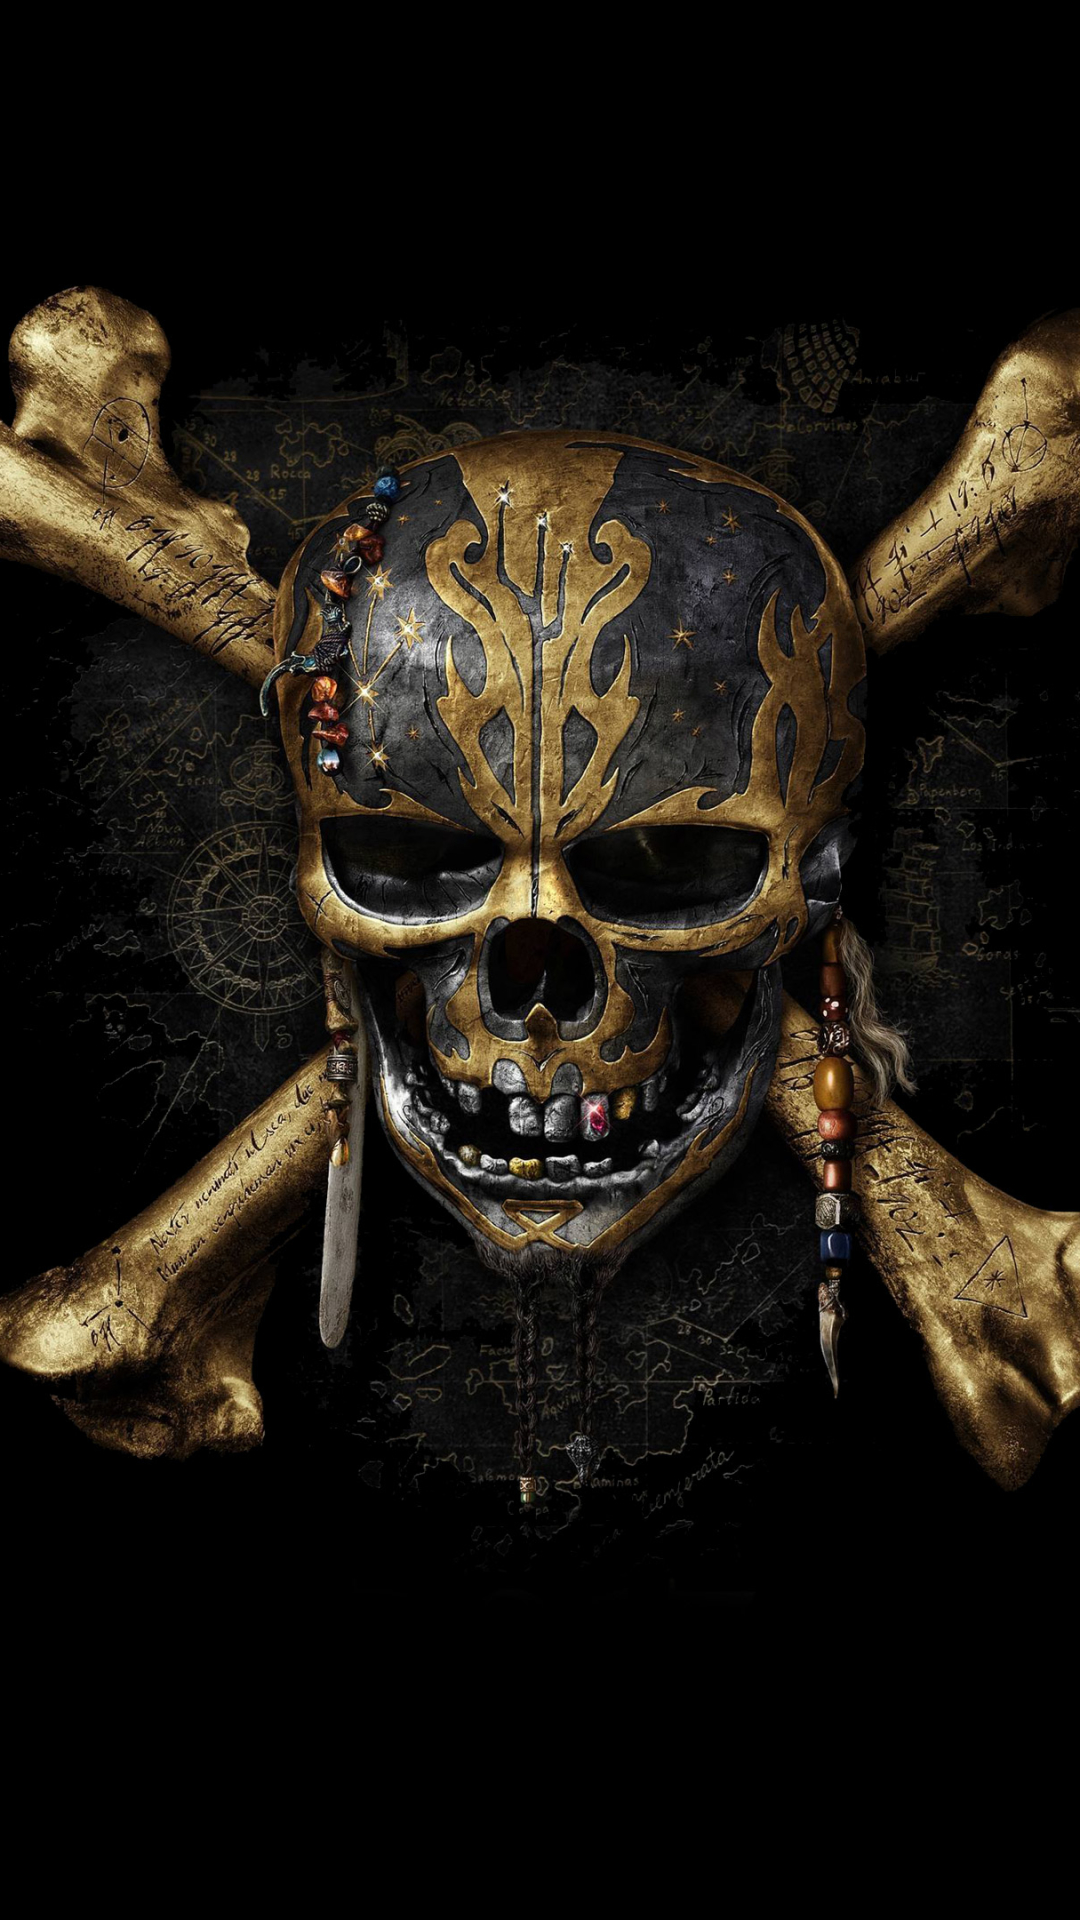 Descarga gratuita de fondo de pantalla para móvil de Piratas Del Caribe, Cráneo, Películas, Cráneos, Piratas Del Caribe: La Venganza De Salazar.